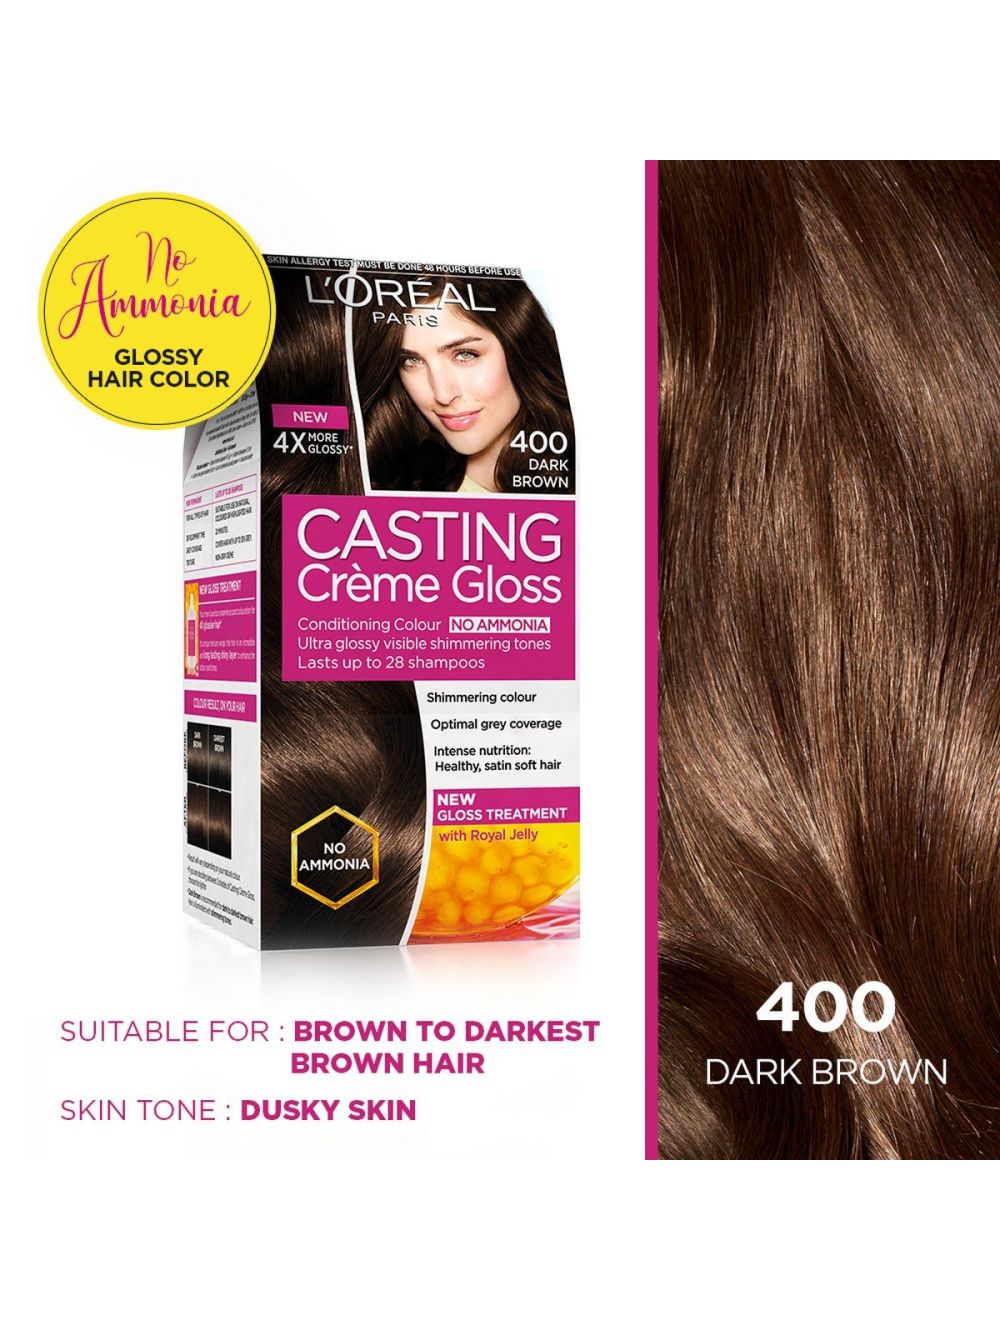 L'Oreal Paris Casting Creme Gloss Hair Color-400 Dark Brown - Niram